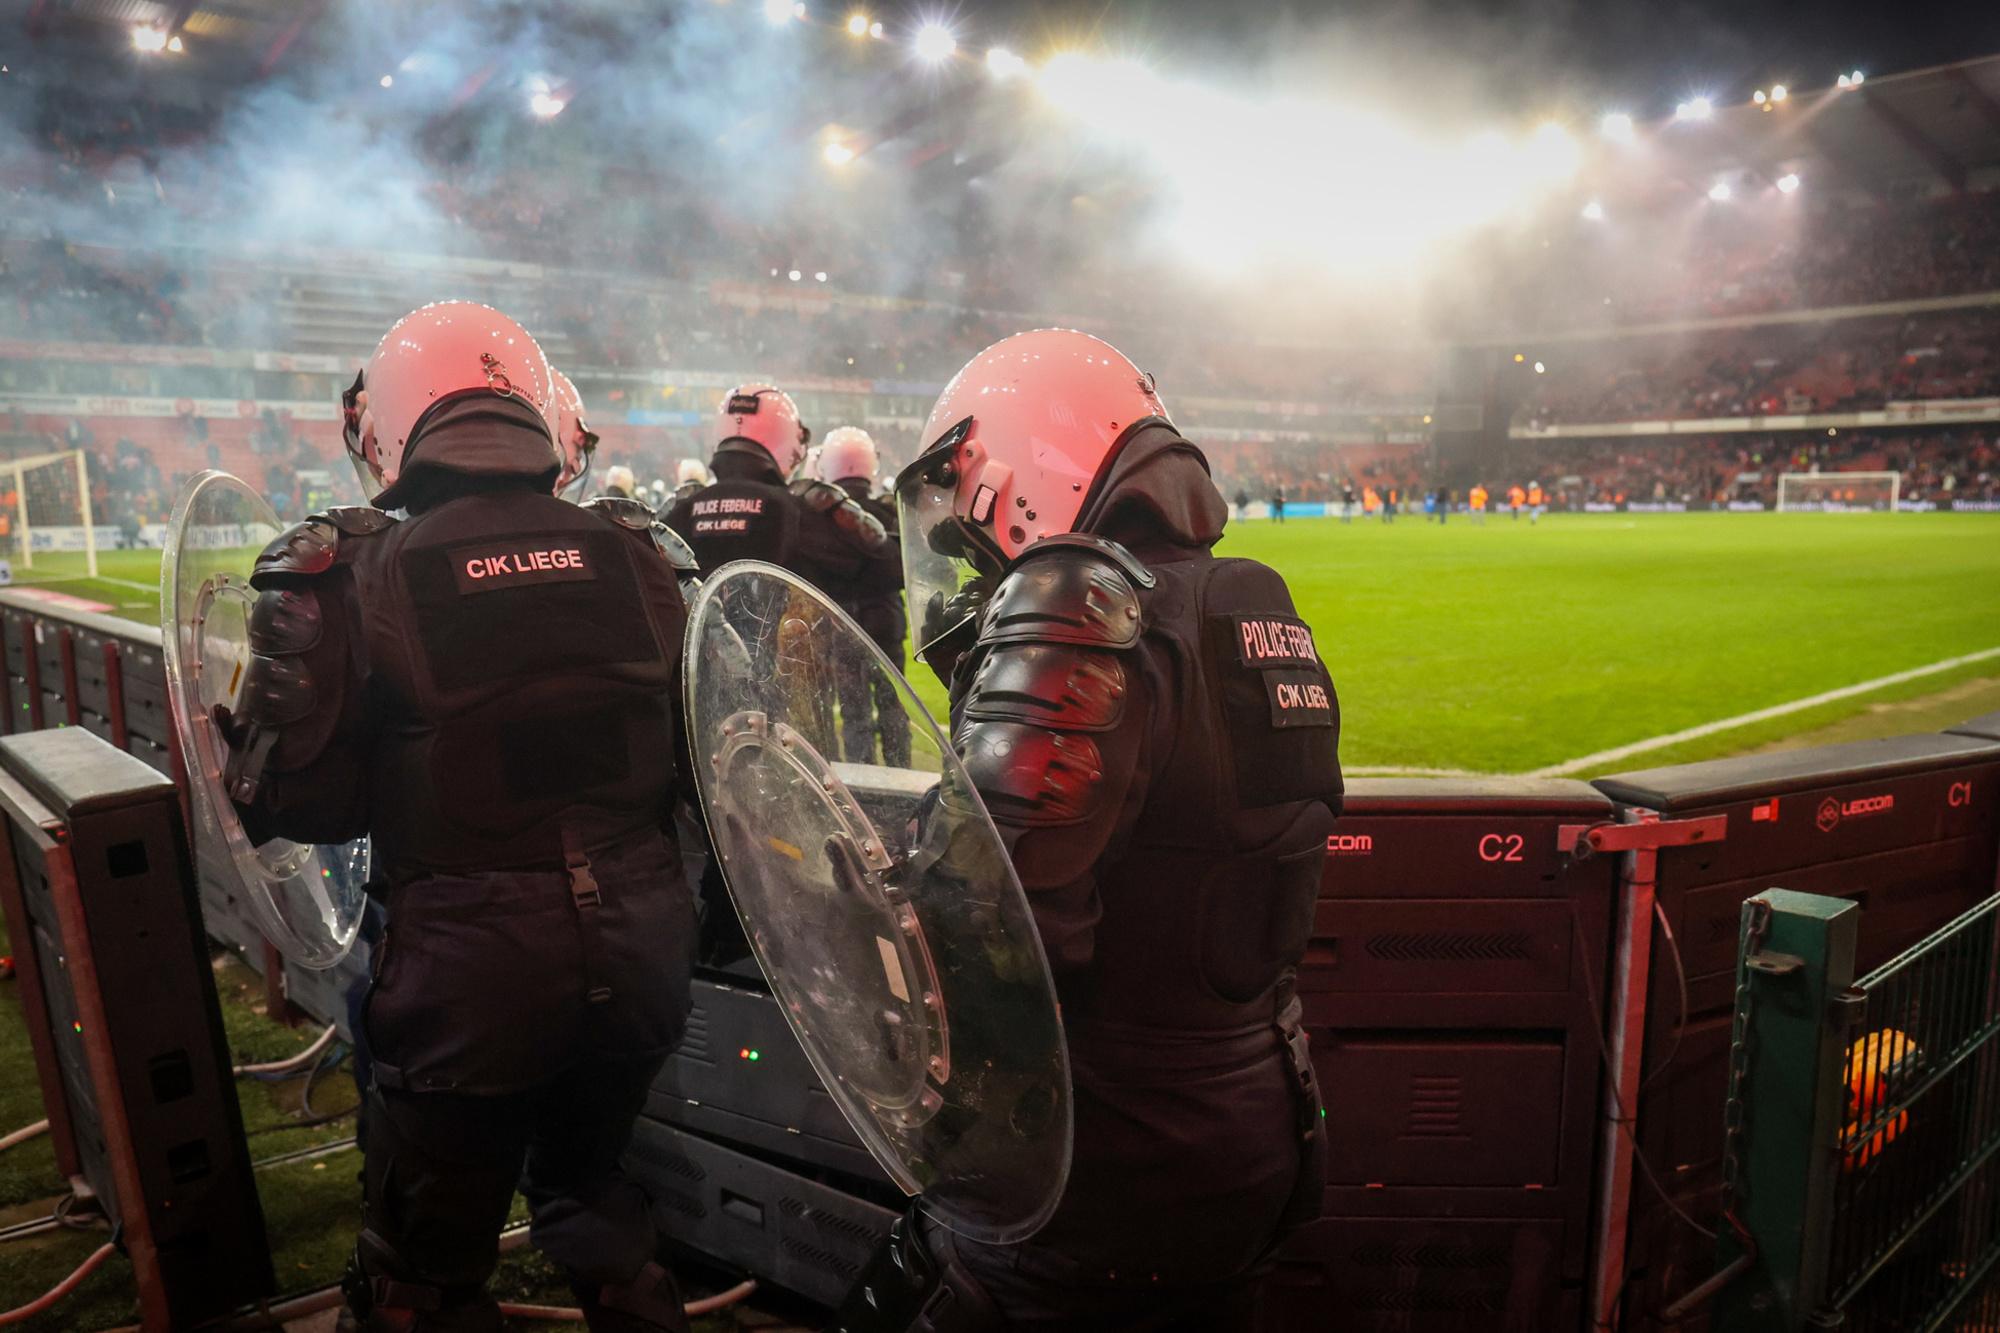 Standard-Charleroi, le derby wallon a dégénéré: 